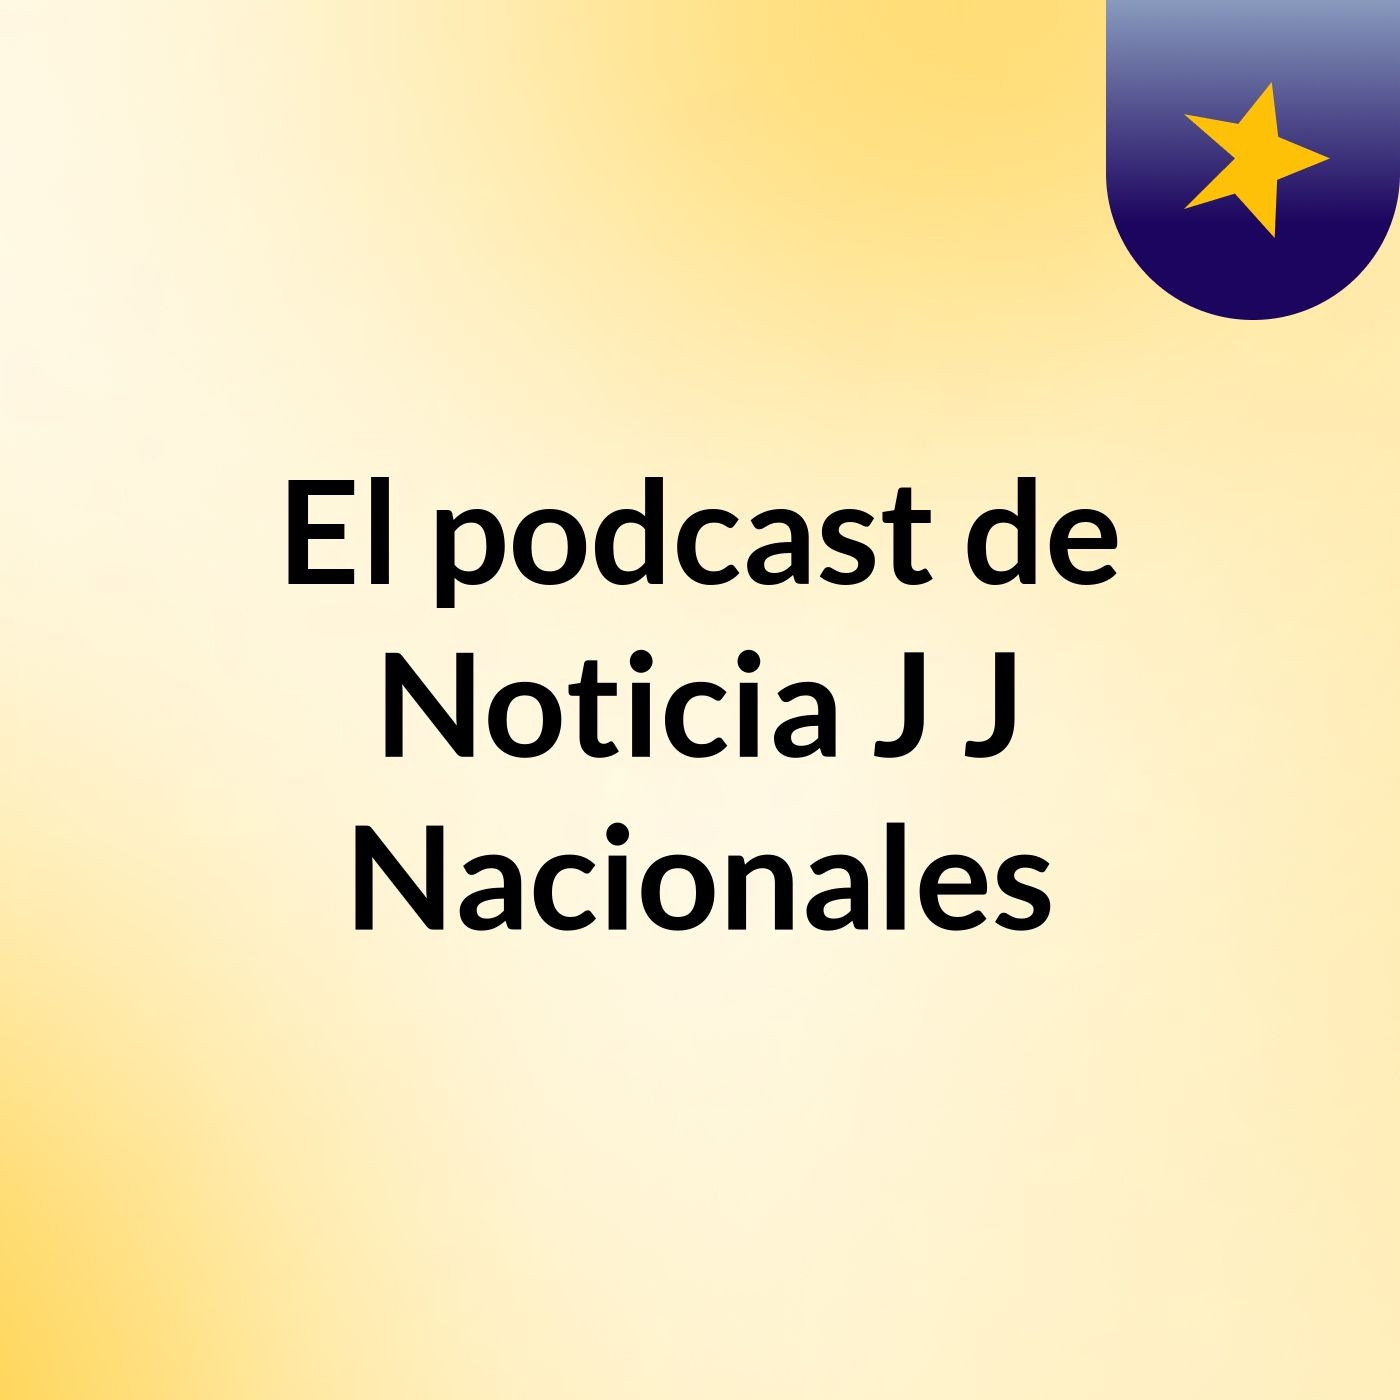 El podcast de Noticia J J Nacionales